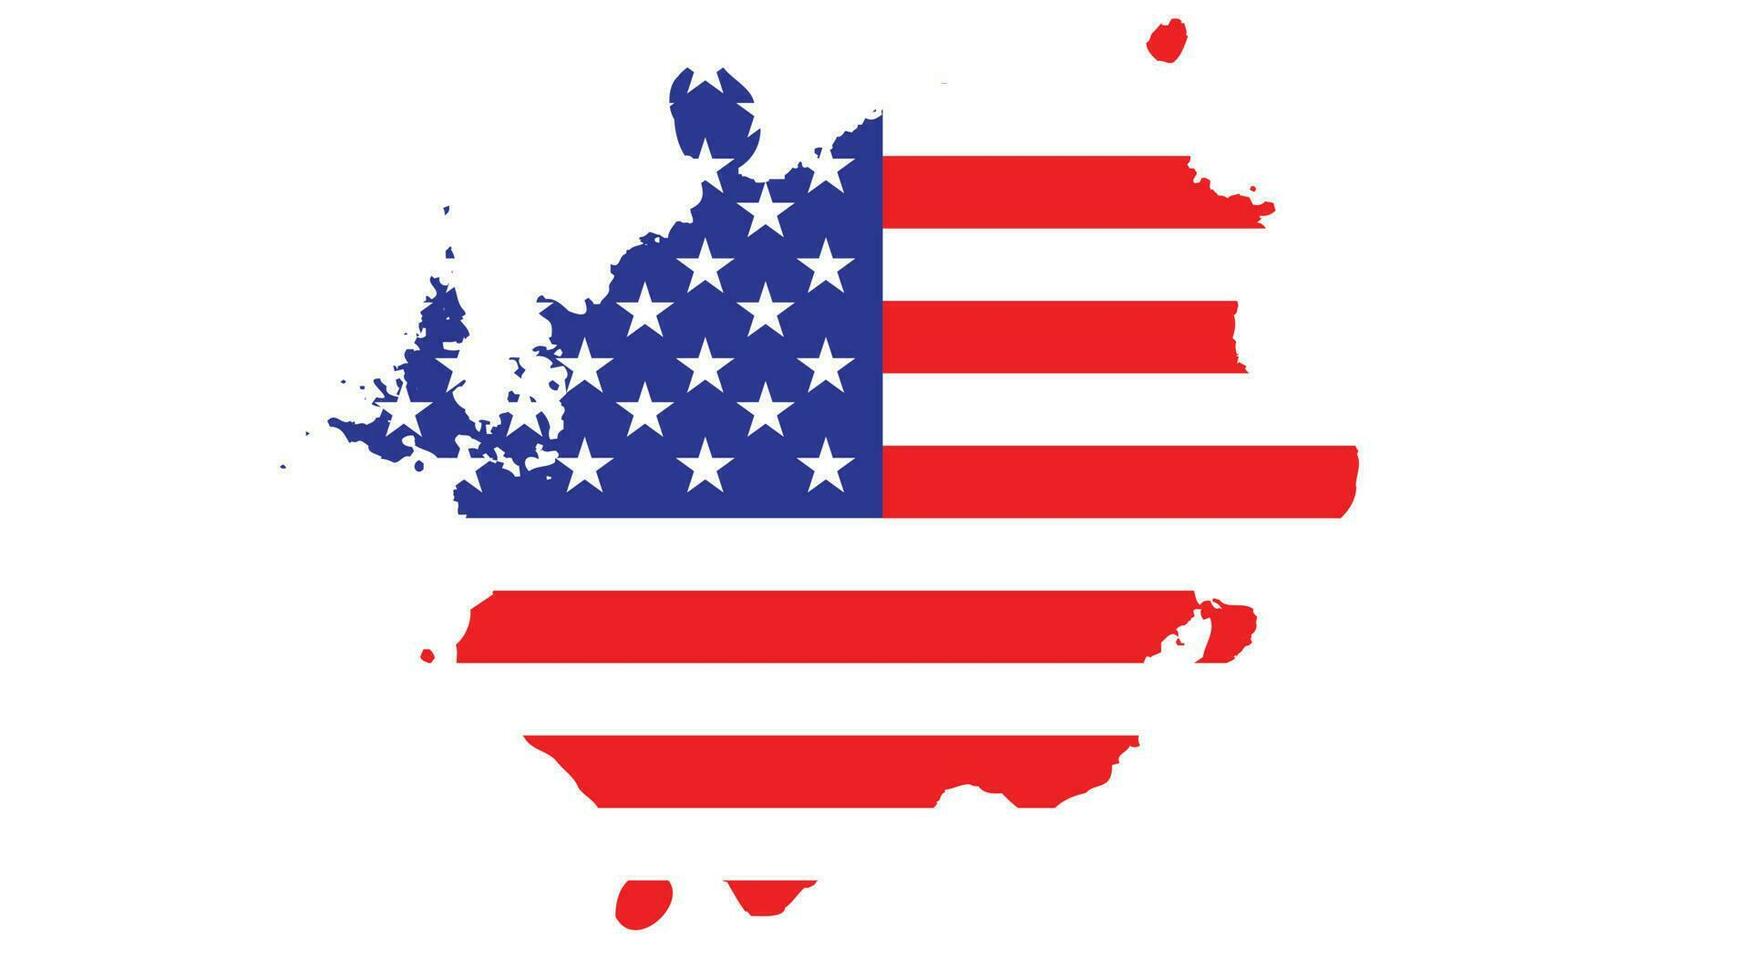 verontrust abstract Verenigde Staten van Amerika vlag vector